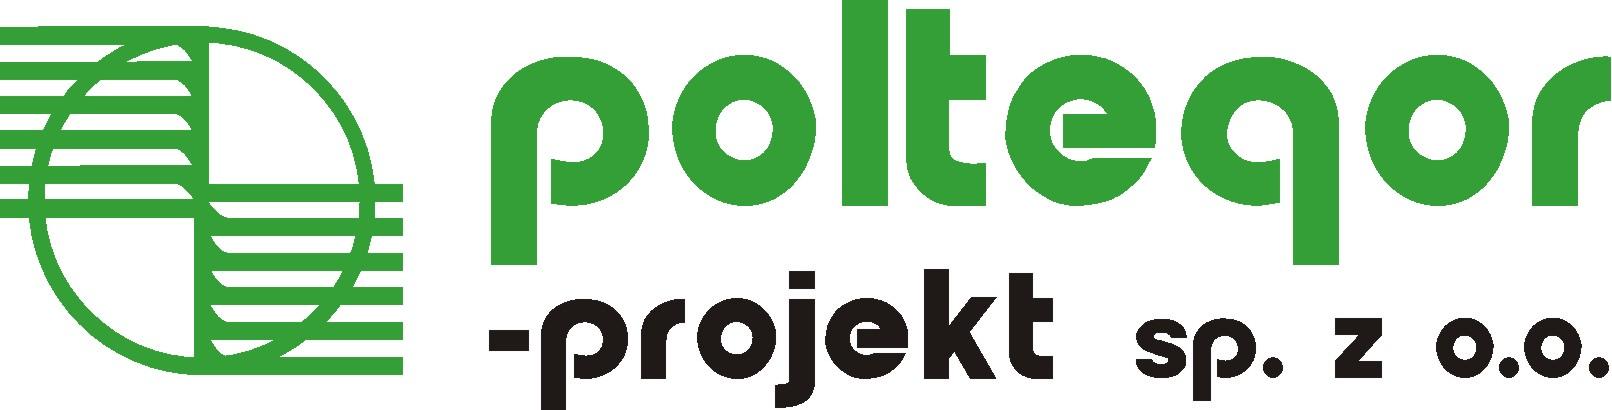 Poltegor-projekt sp. z o.o.